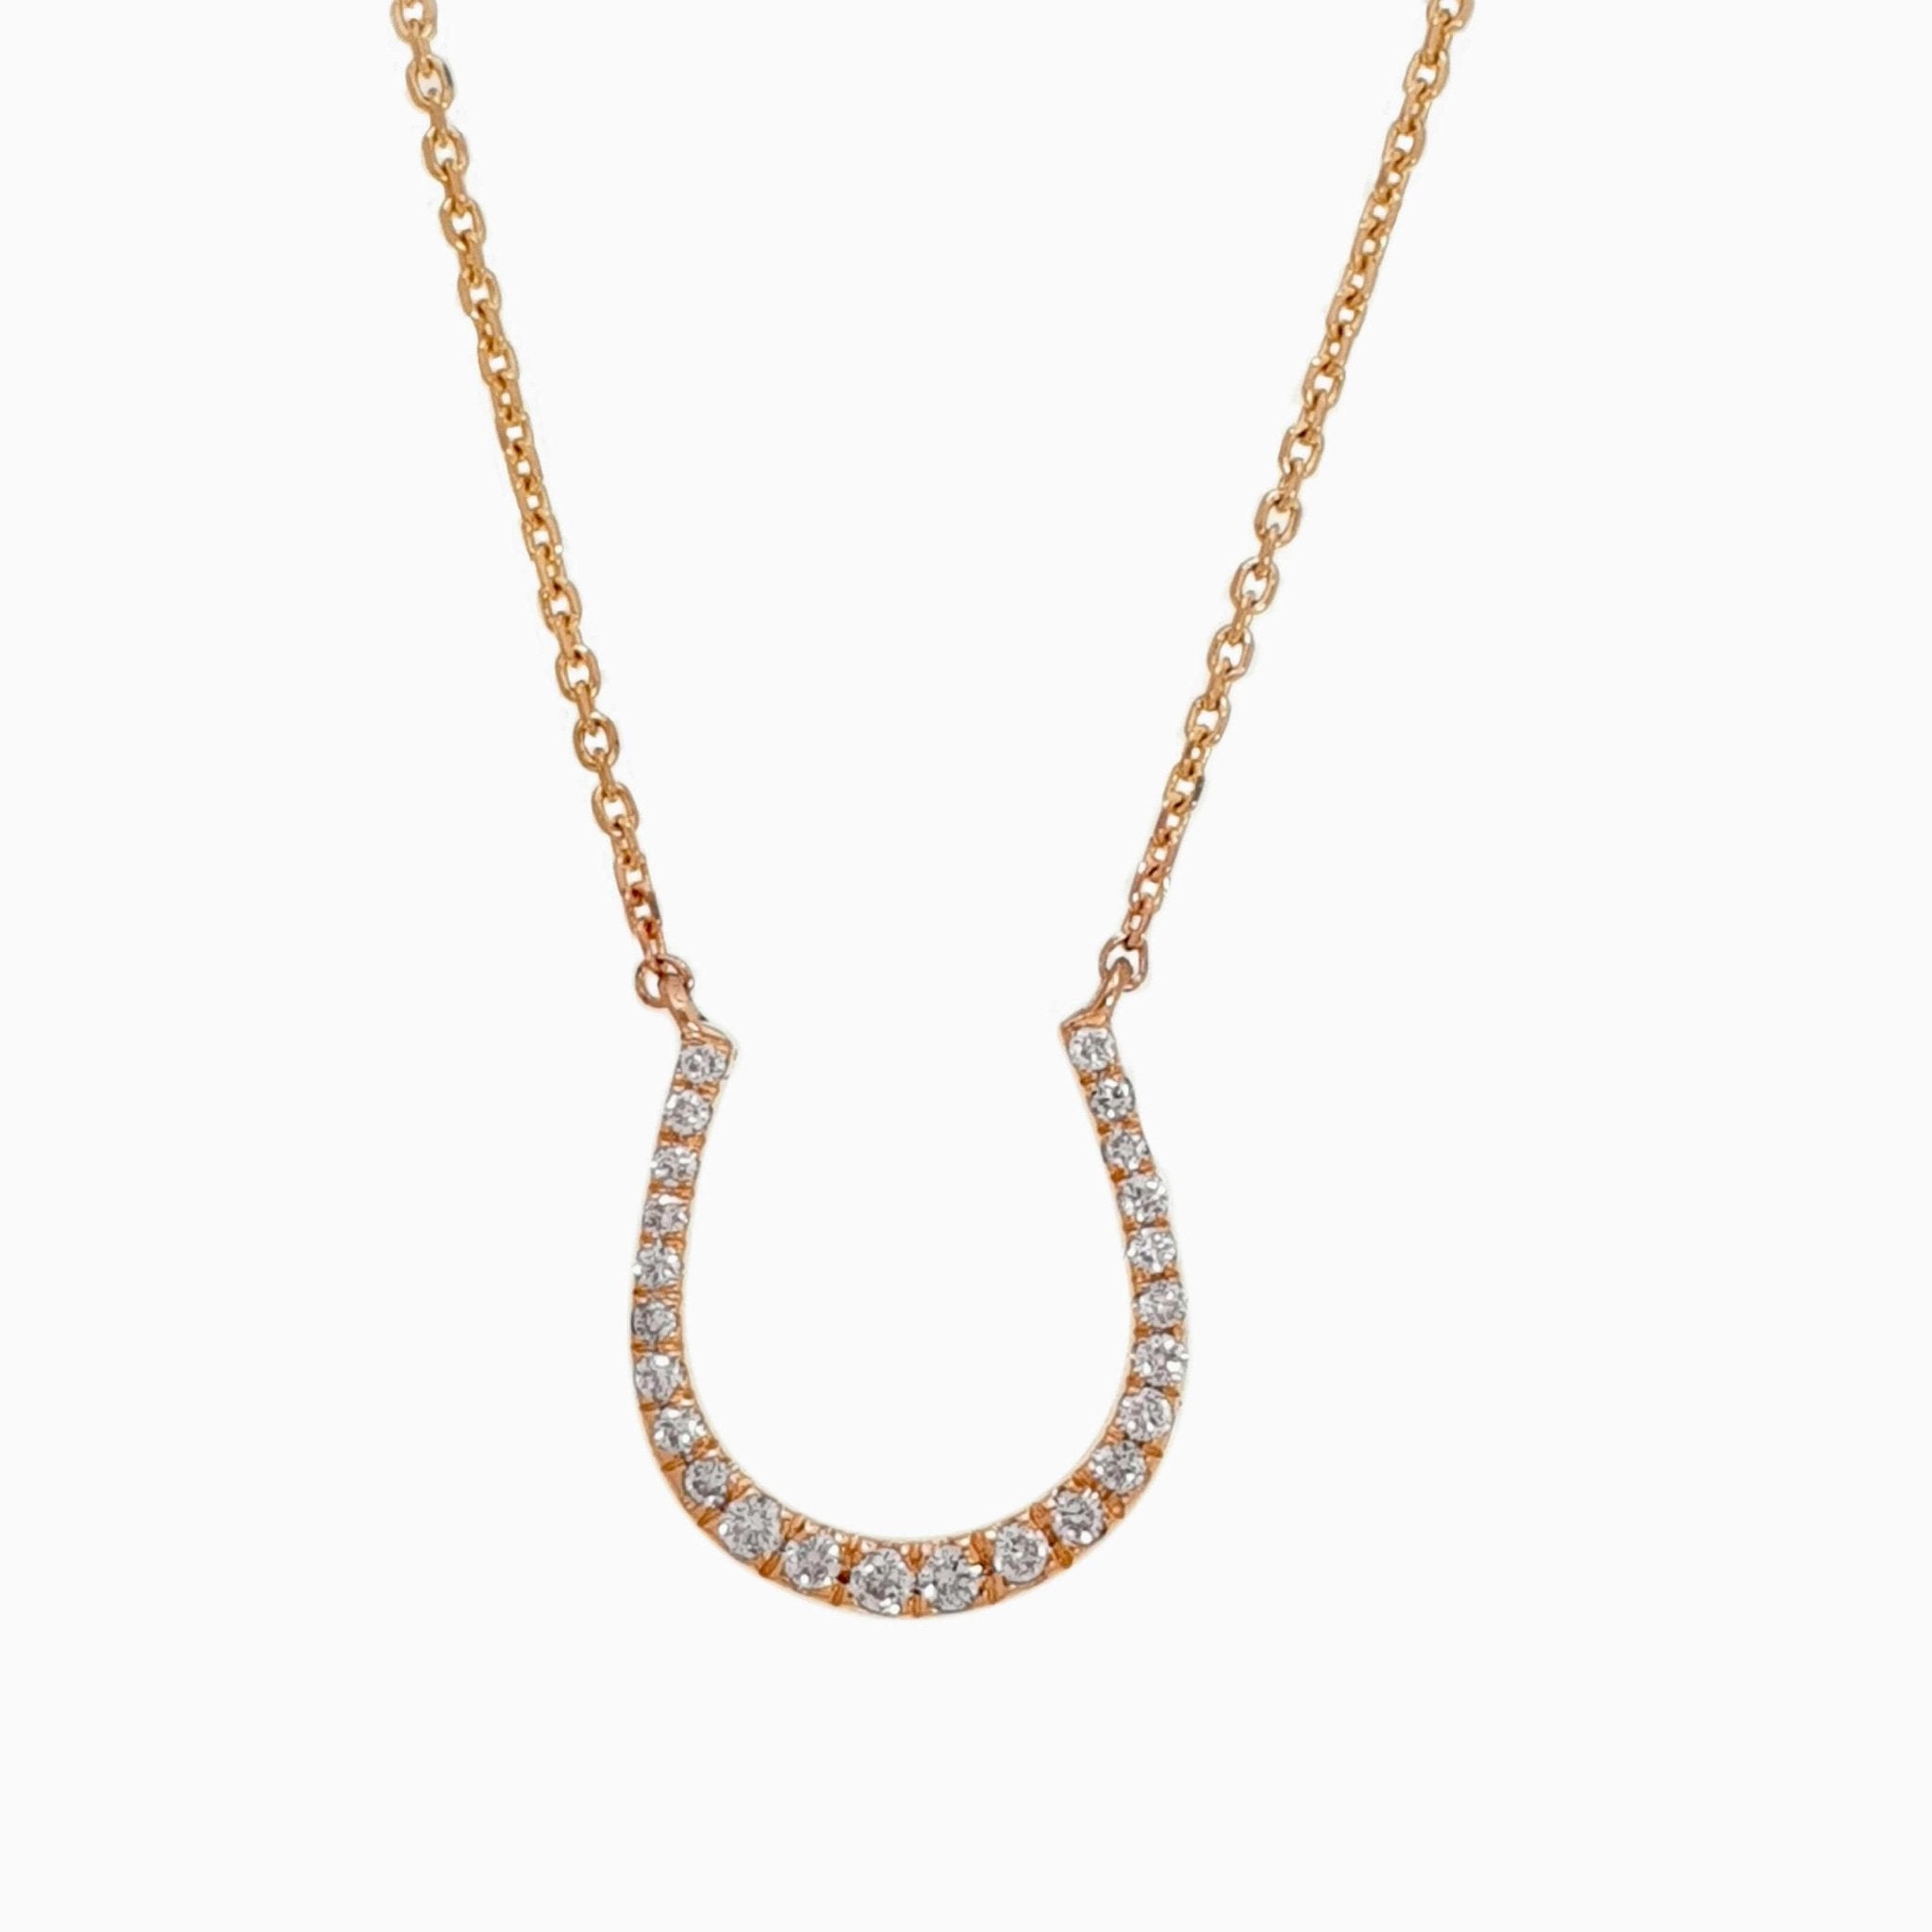 Horseshoe Shape Diamond Necklace